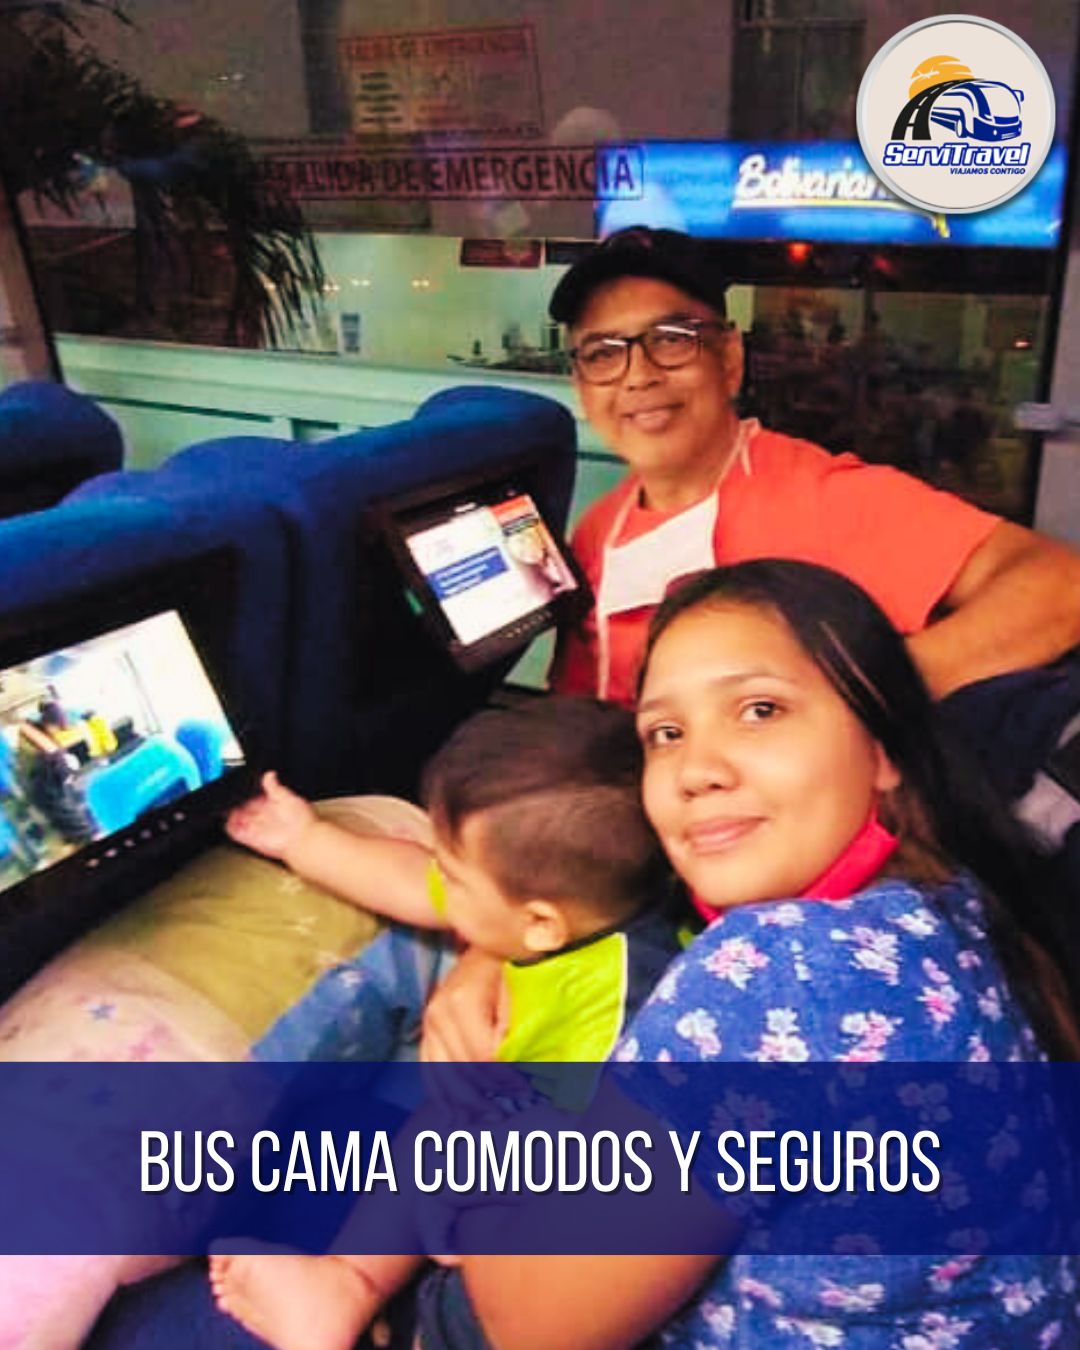 Pasajes Baratos en Bus, Tiquetes Baratos, Boletos Baratos en Avión, Buses Cómodos y Seguros, Cali, Colombia